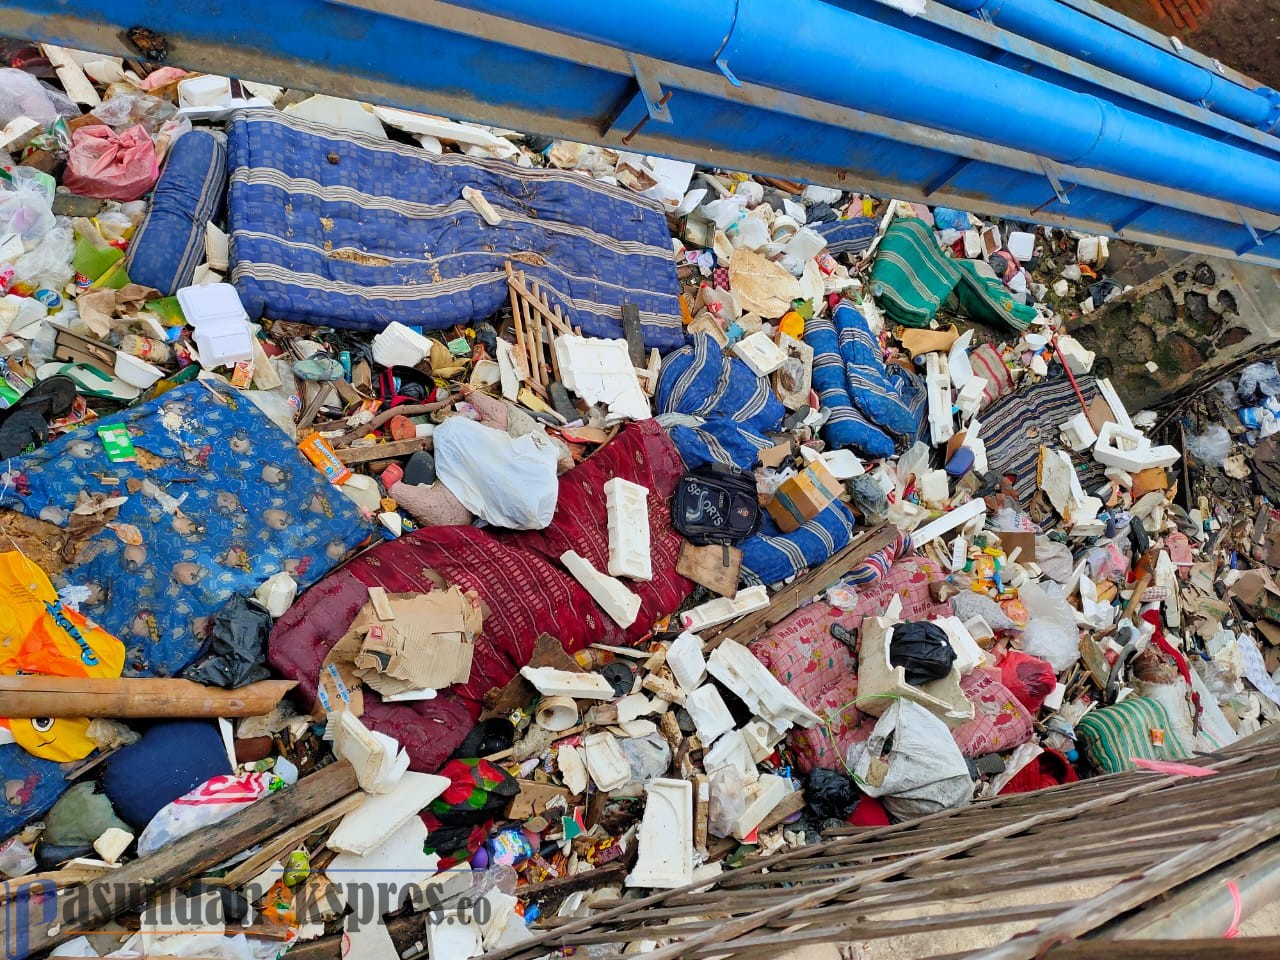 TNI dan BPBD Angkat Sampah yang Menumpuk di Kali Cigadung Usai Hanyut Terbawa Banjir